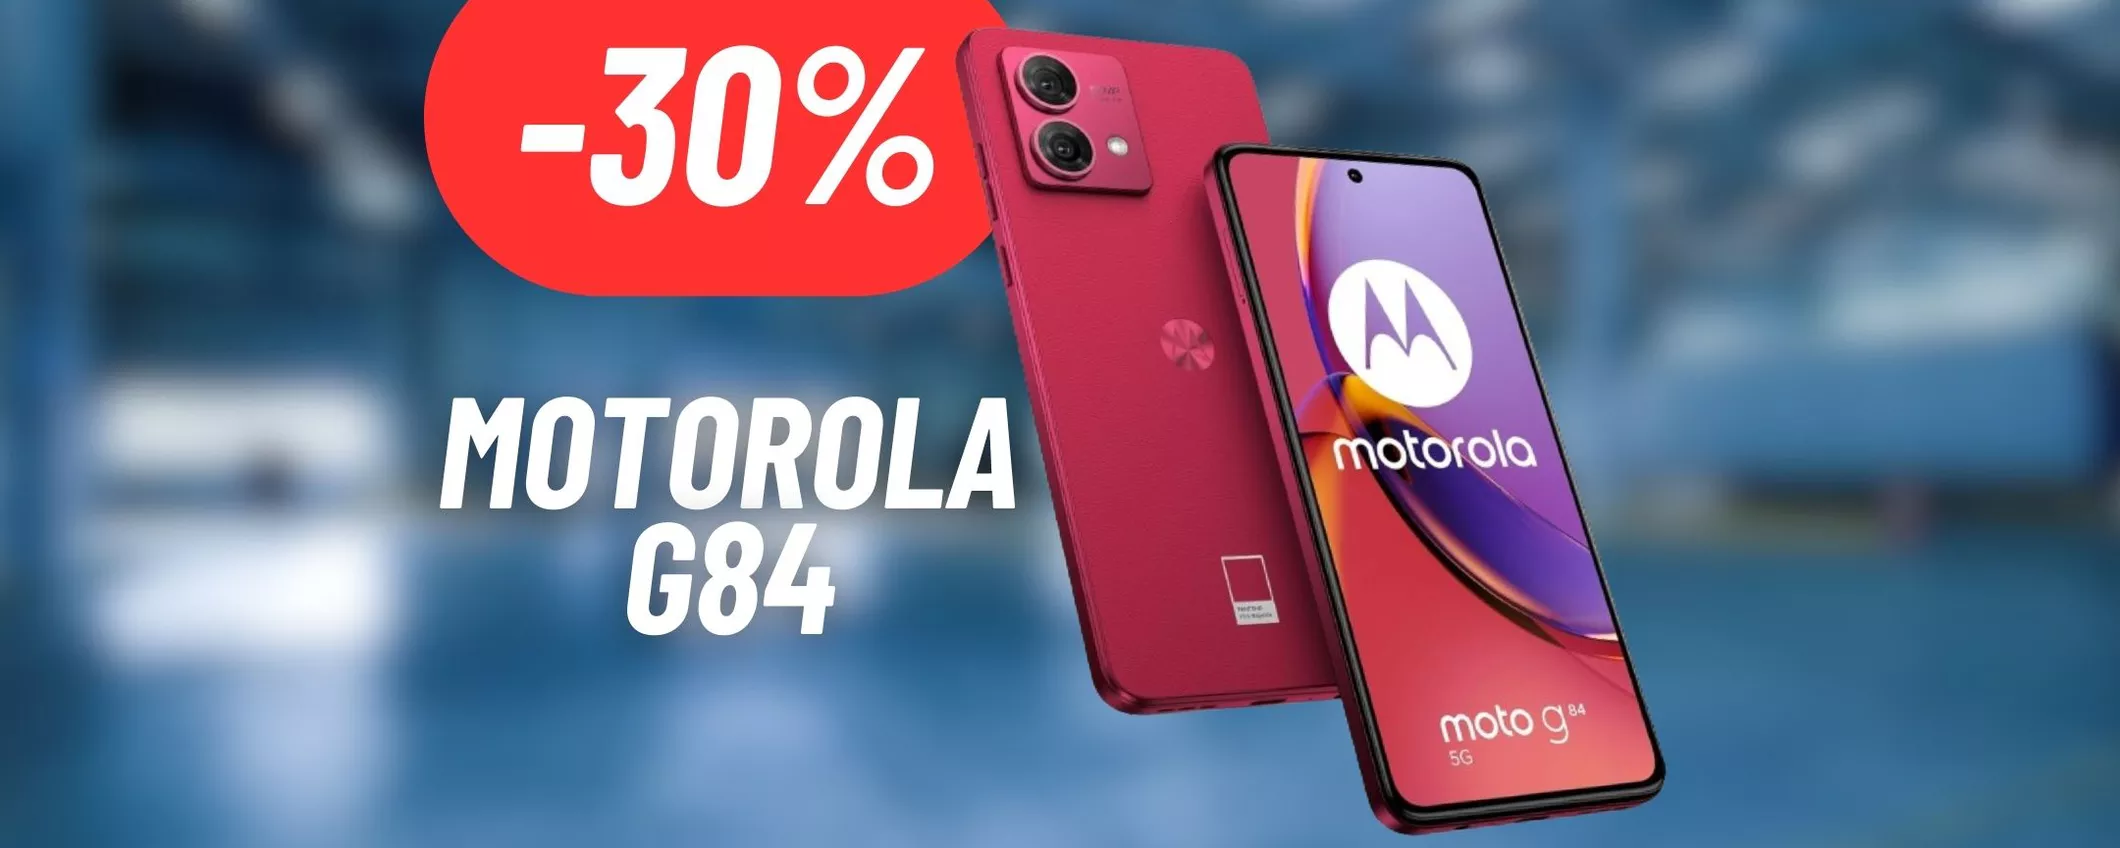 CALA A PICCO il prezzo del Motorola G84 con uno sconto del 30% attivo su Amazon